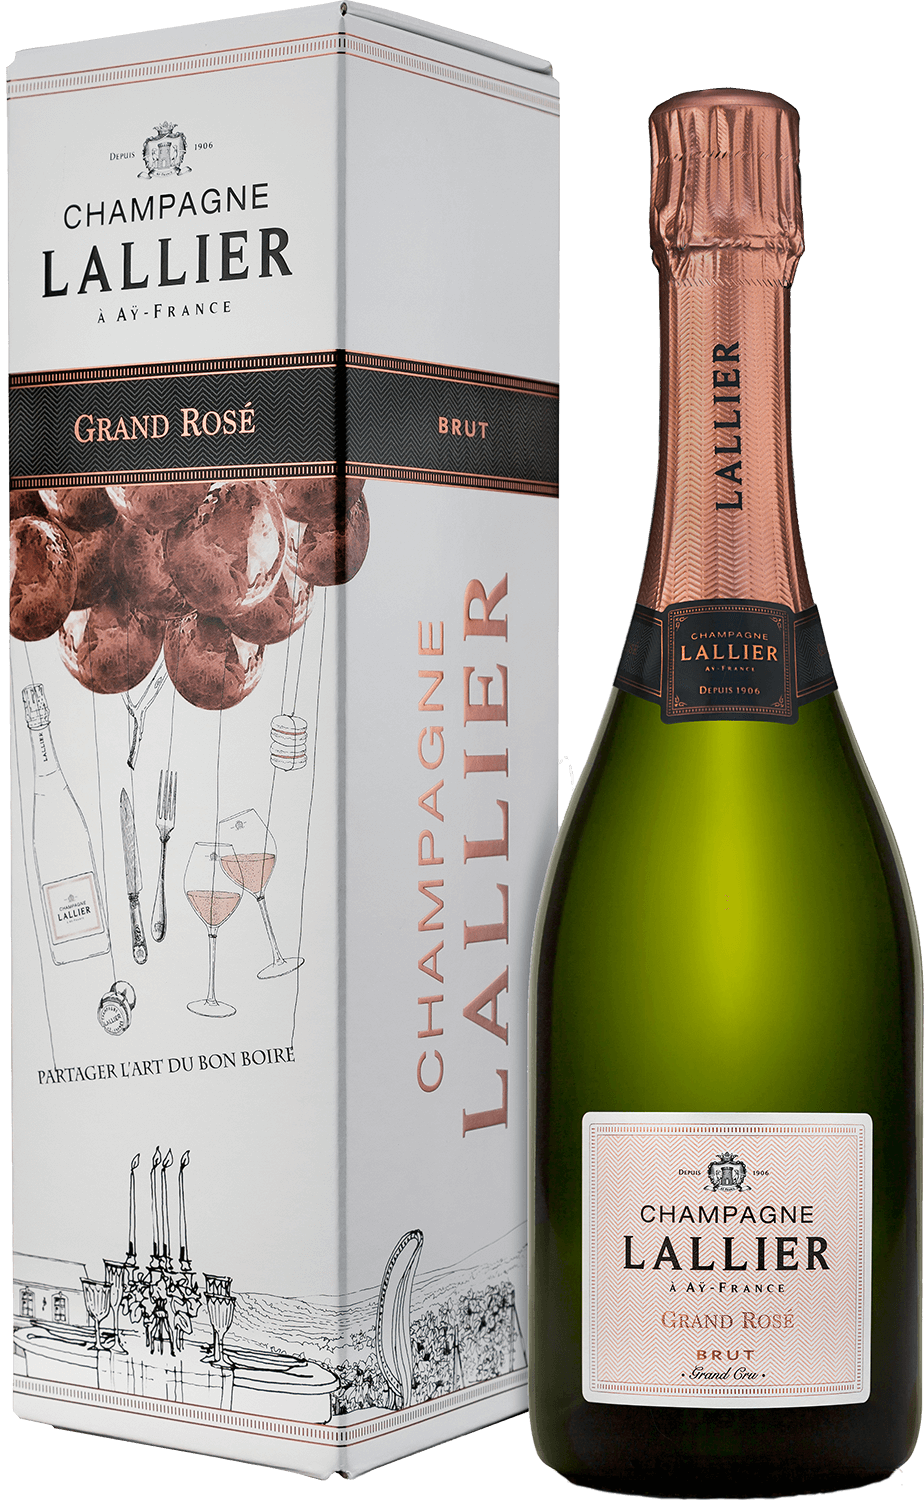 Lallier Grand Rose Brut Grand Cru Champagne AOC (gift box) lallier grand rose brut grand cru champagne aoc gift box